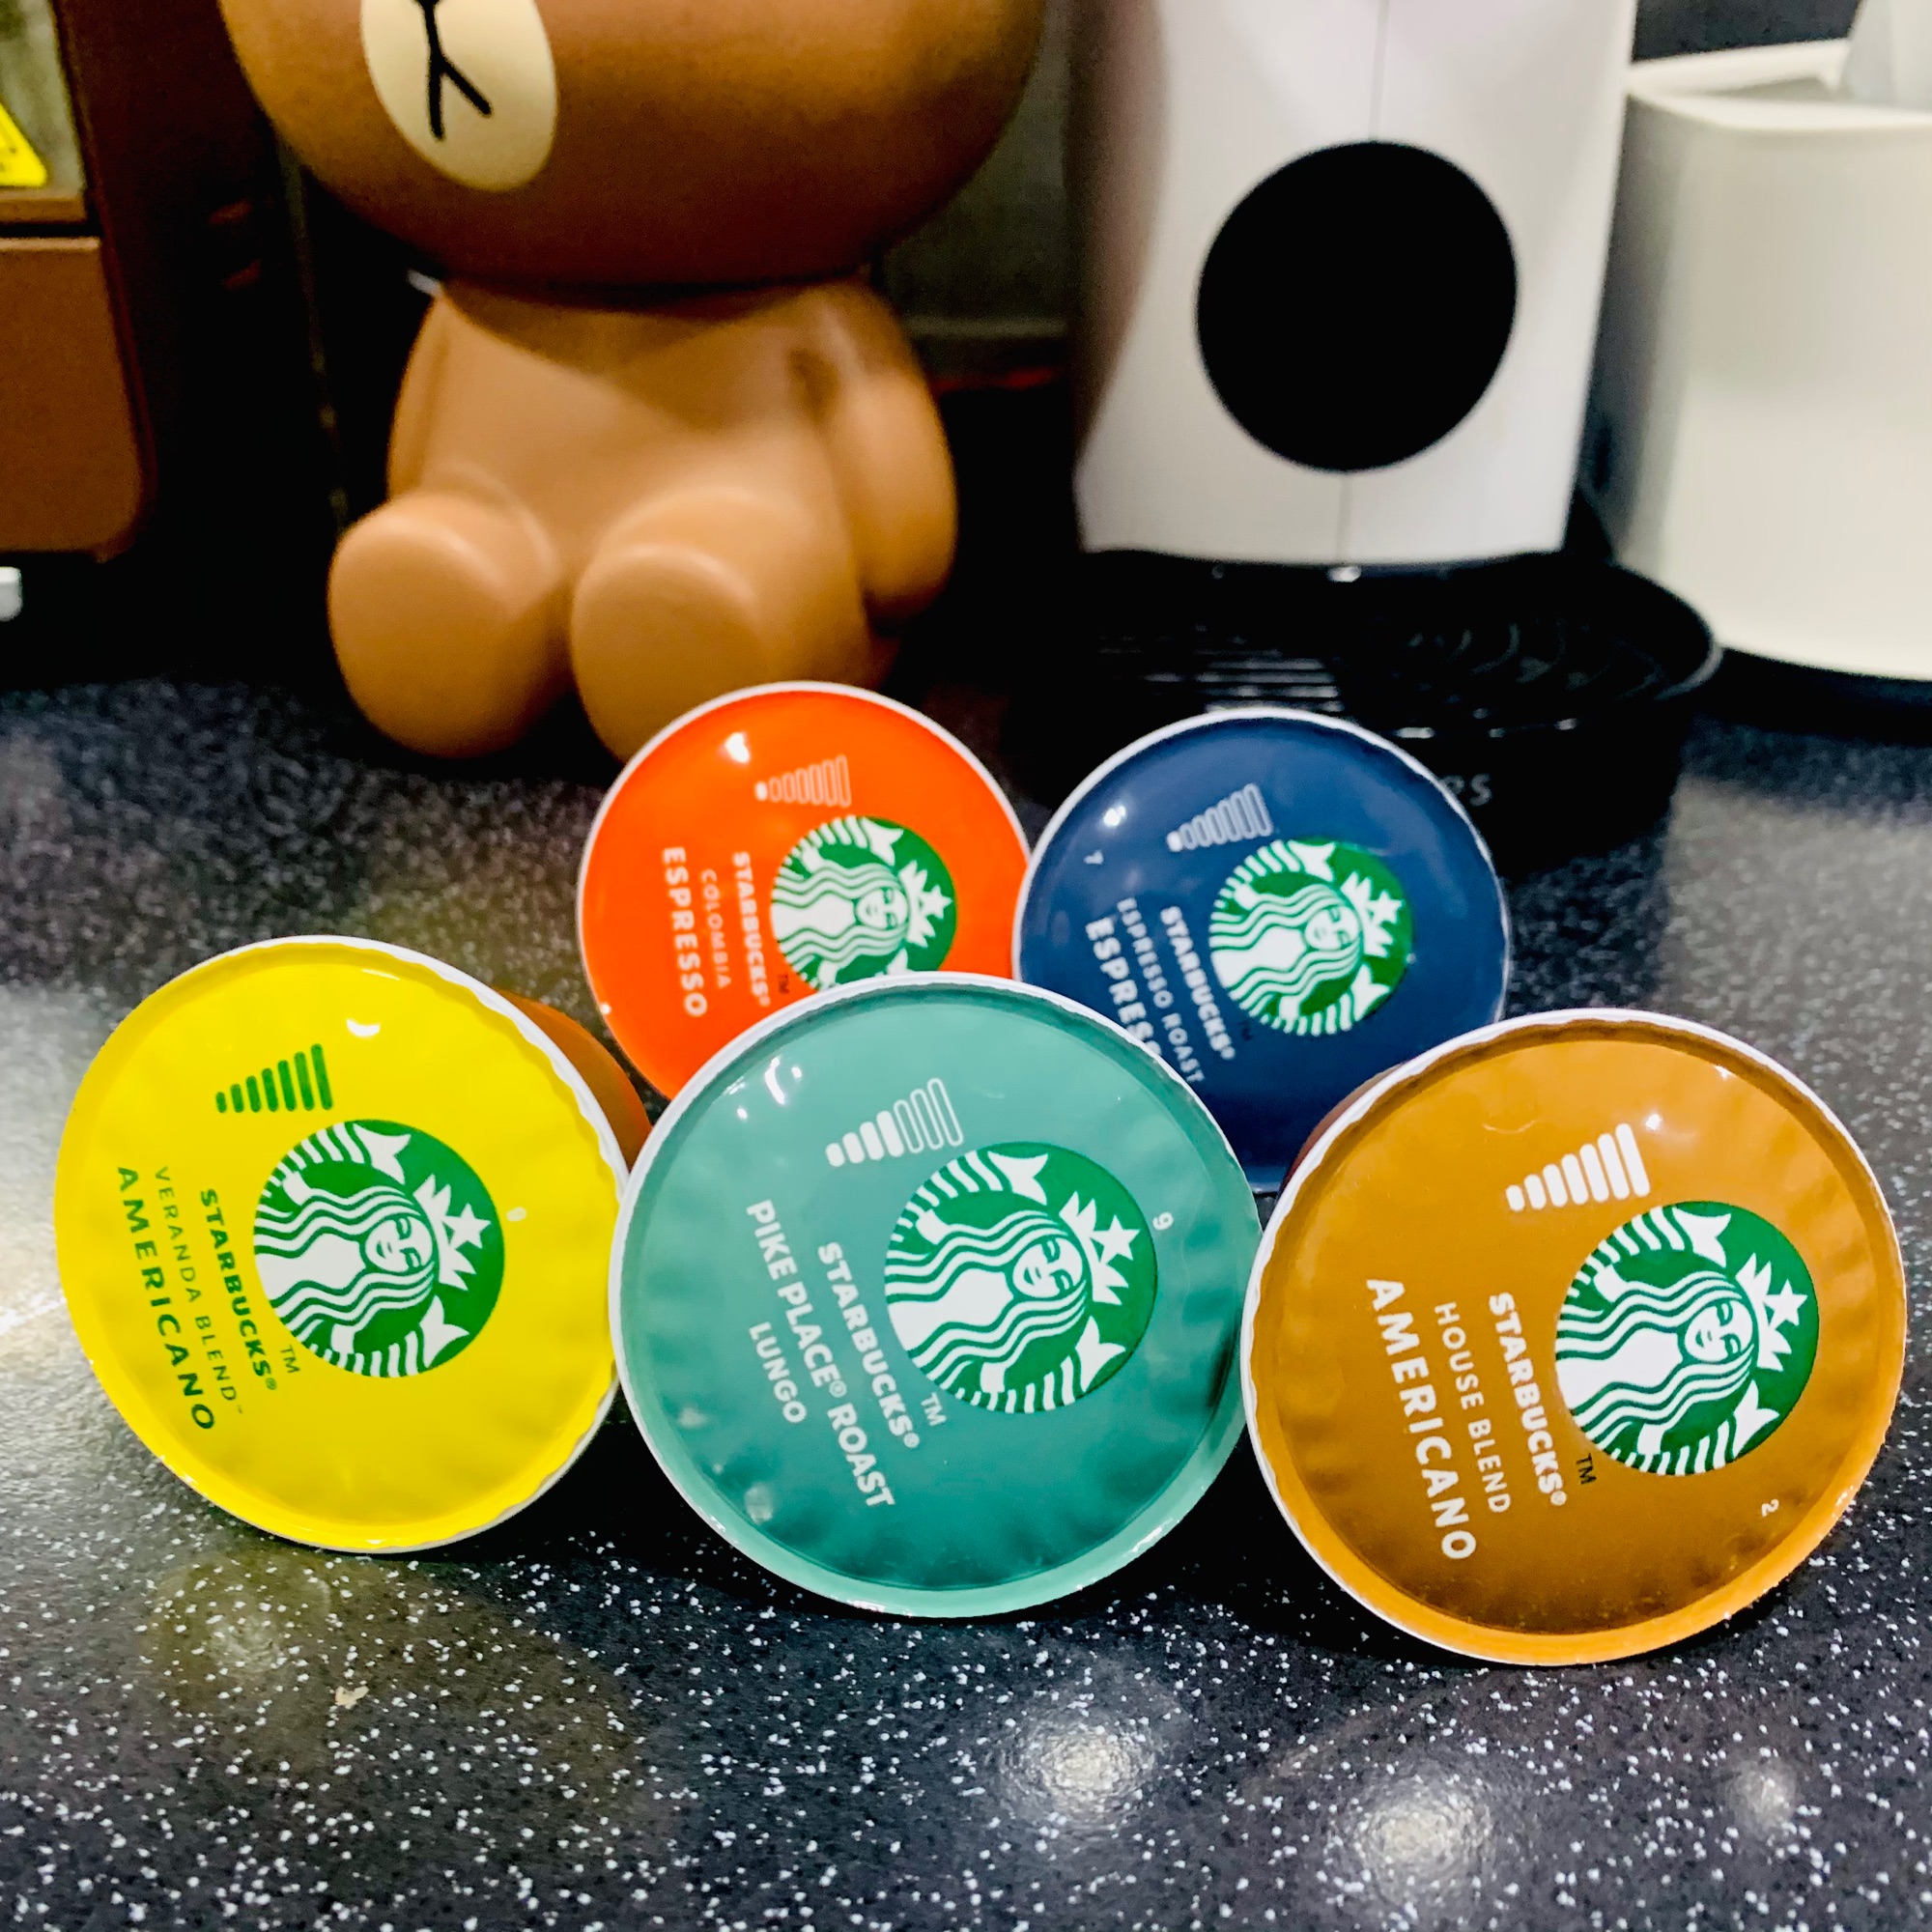 แคปซูล กาแฟ สตาร์บัค 5 เสิร์ฟ mixed coffee set dolce gusto Starbucks มีรสชาติที่เมืองไทยไม่มีด้วยนะคะ